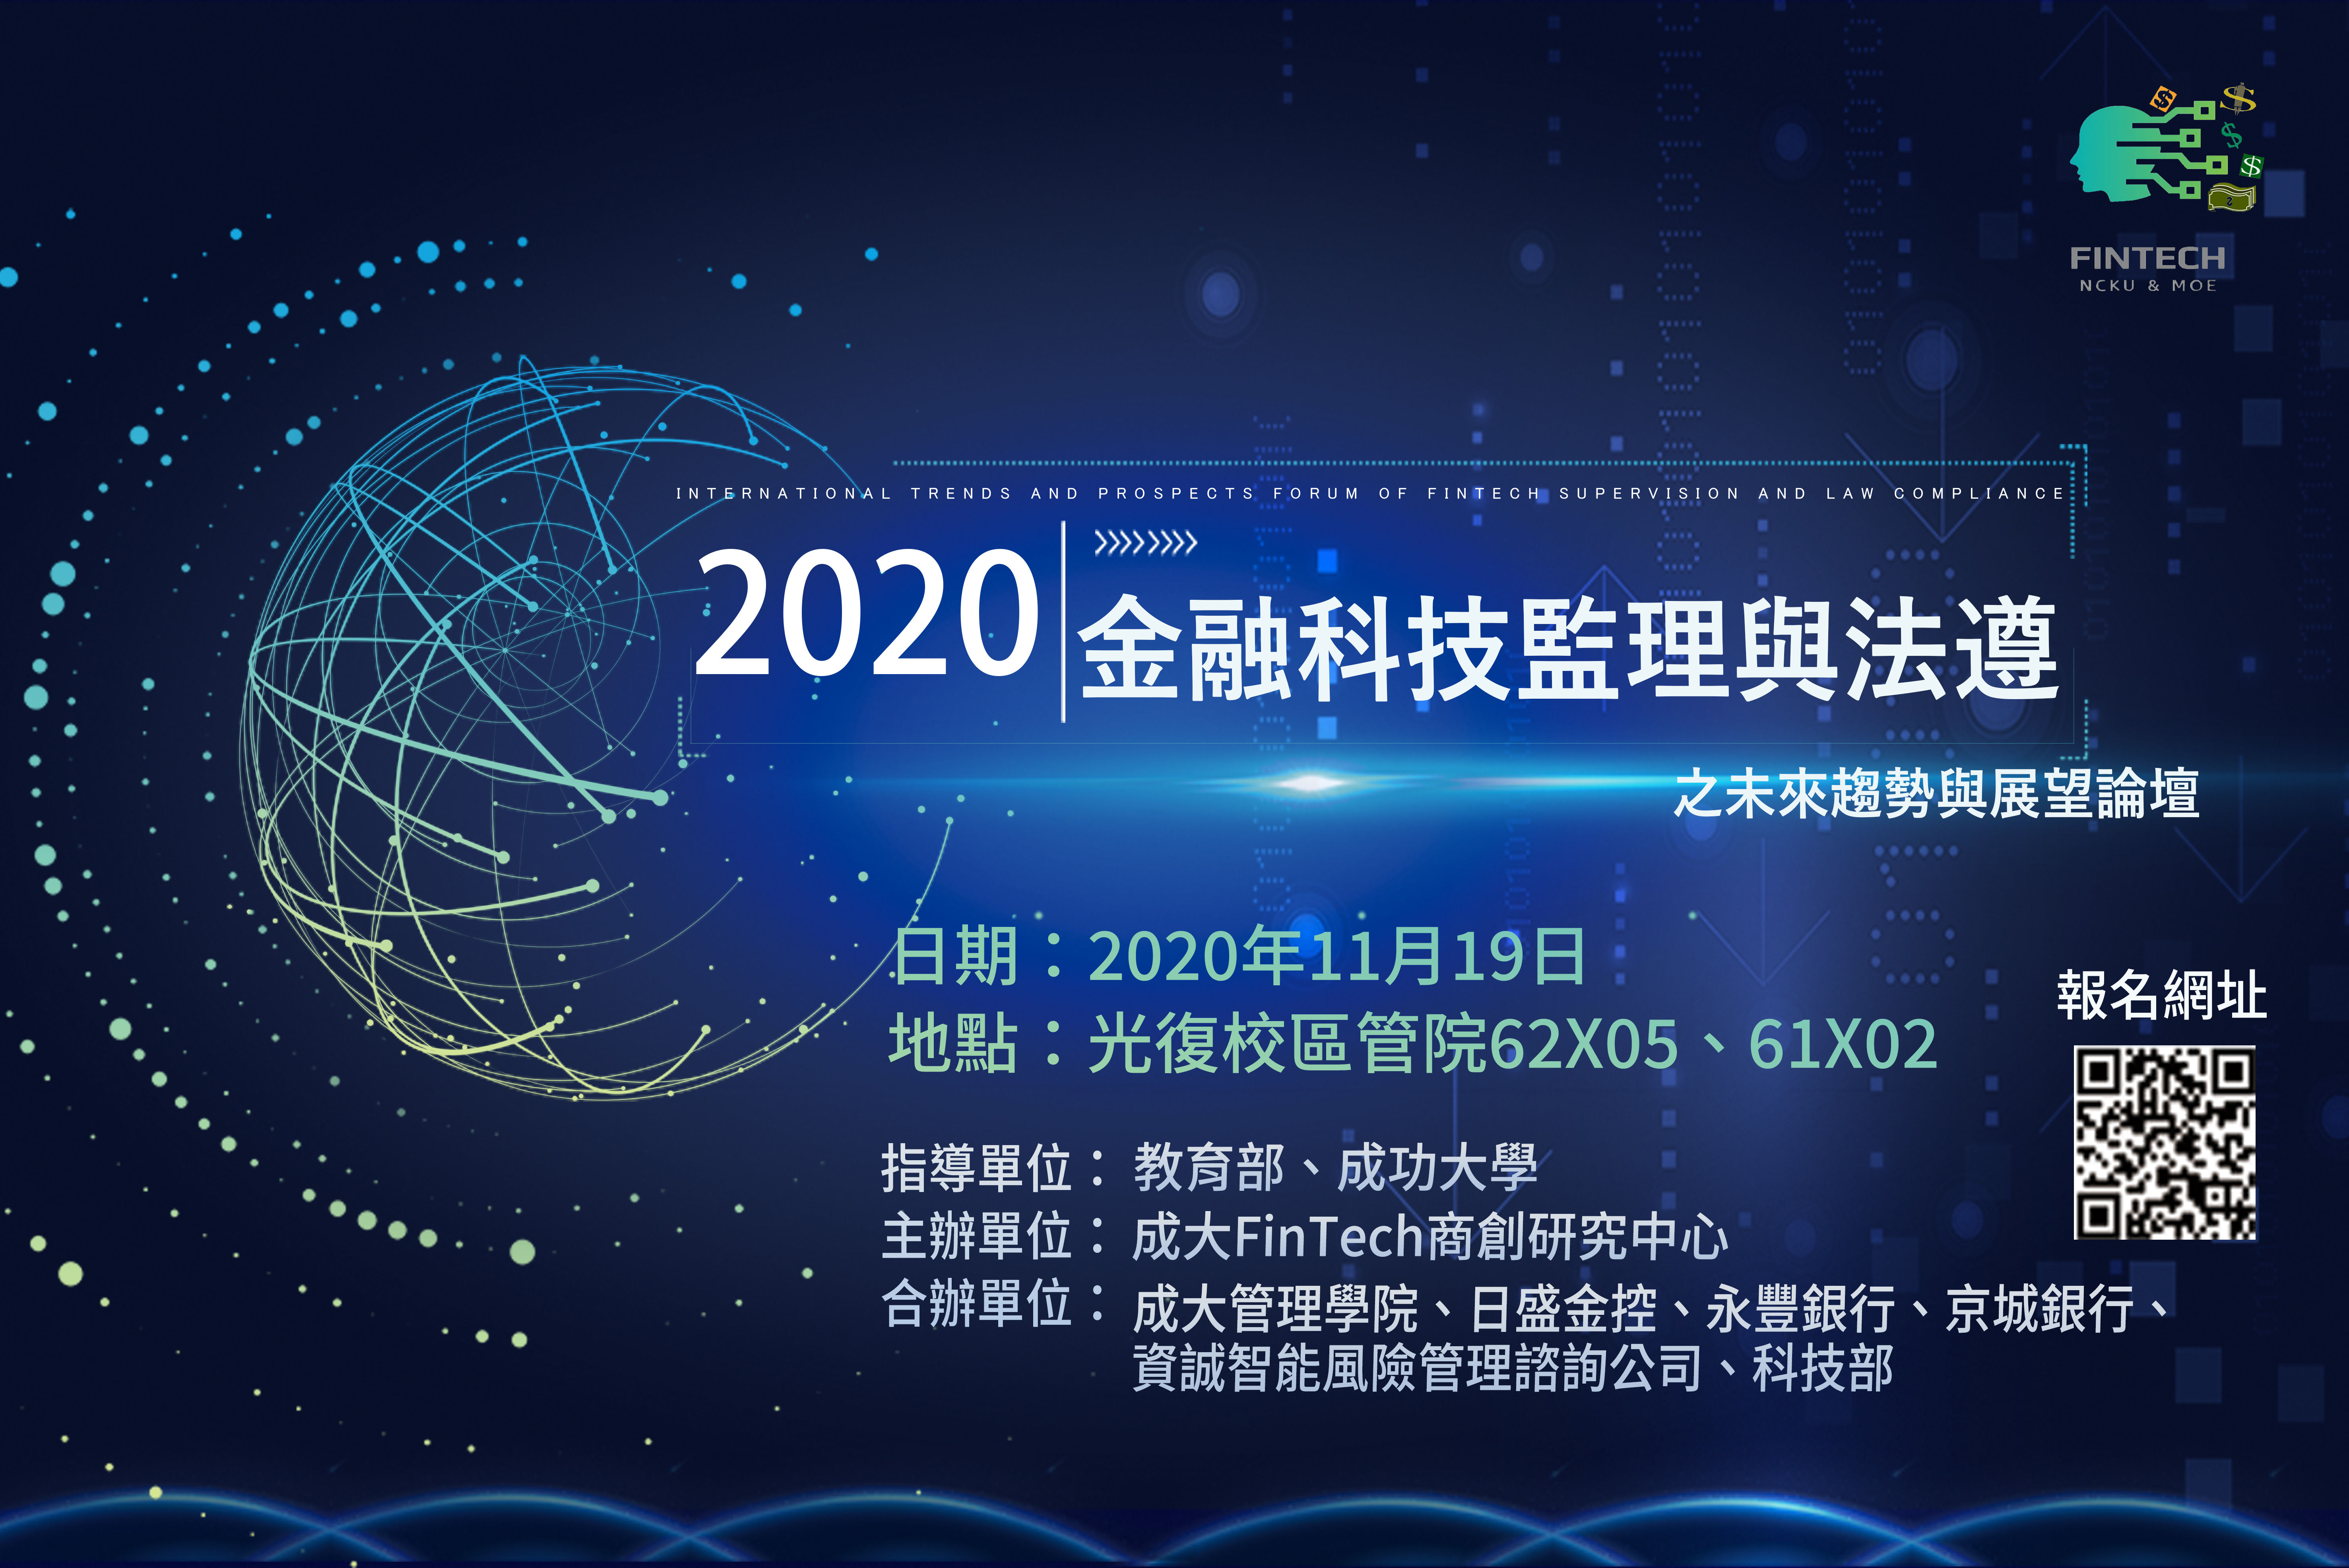 2020 forum